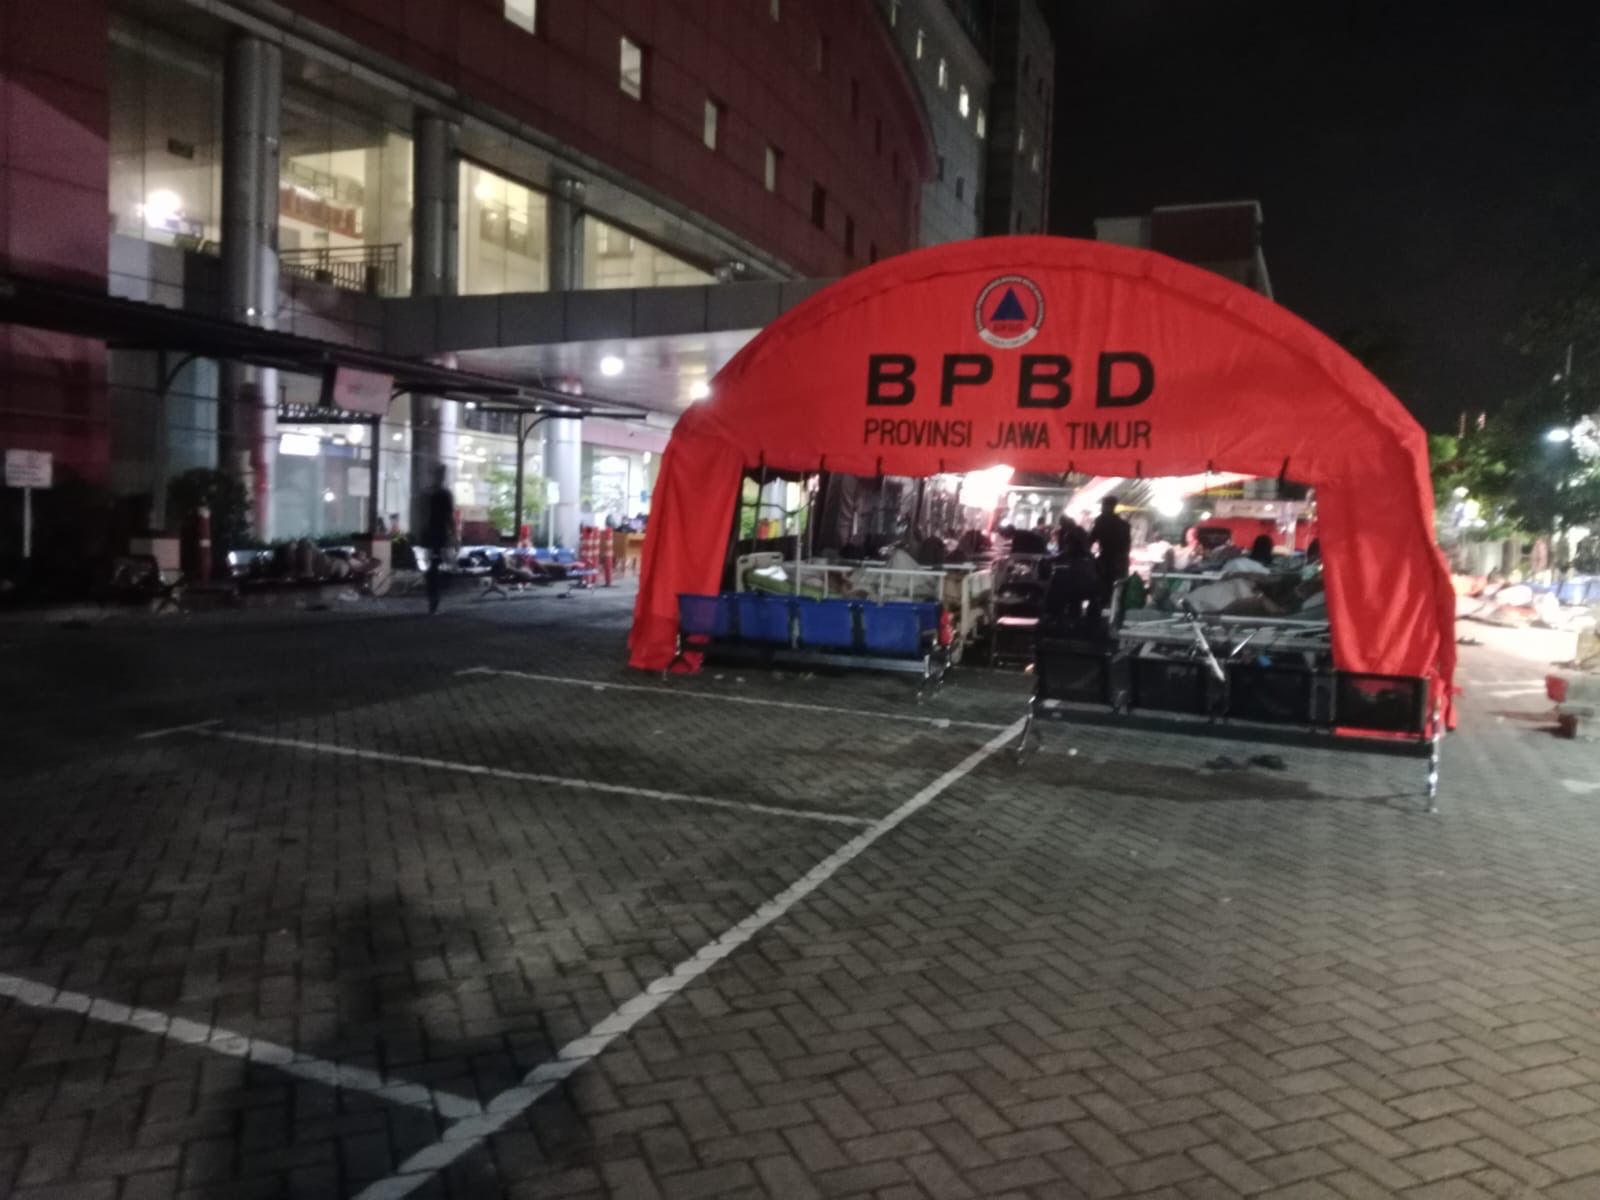 BPBD Surabaya mendirikan tenda darurat di halaman RS Unair